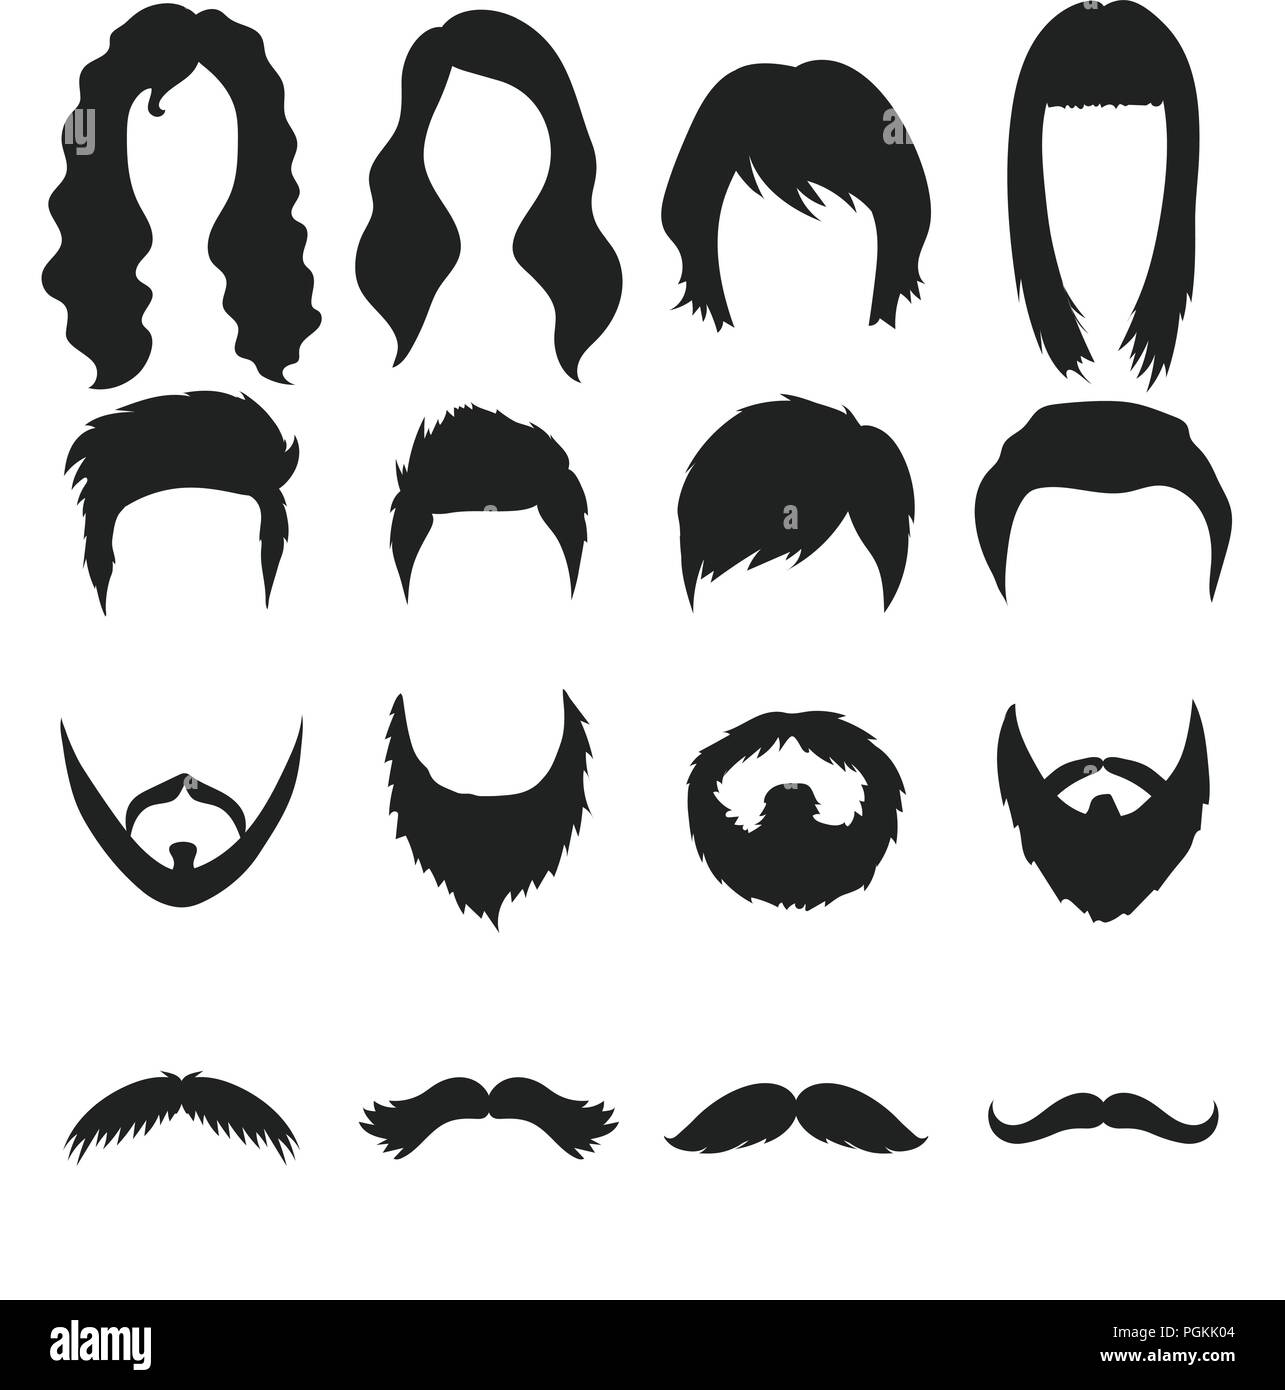 Schnurrbart Und Bart Frisuren Schwarze Symbole In Der Sammlung Fur Design Stilvolle Haarschnitt Vektor Symbol Lieferbar Abbildung Stock Vektorgrafik Alamy